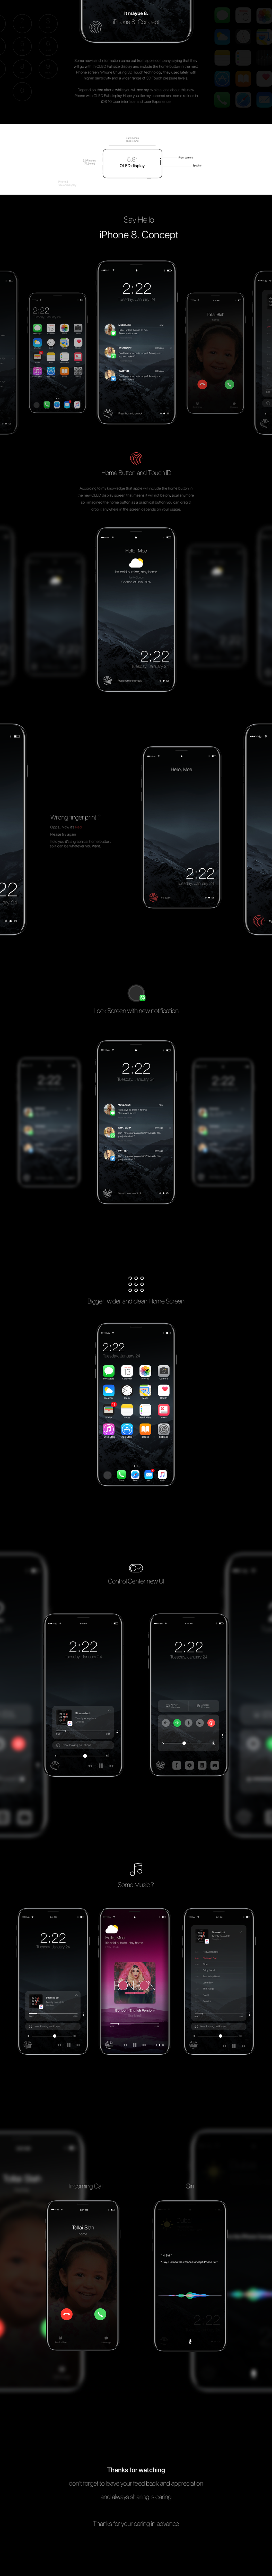 iphone-8-concepto-modo-oscuro